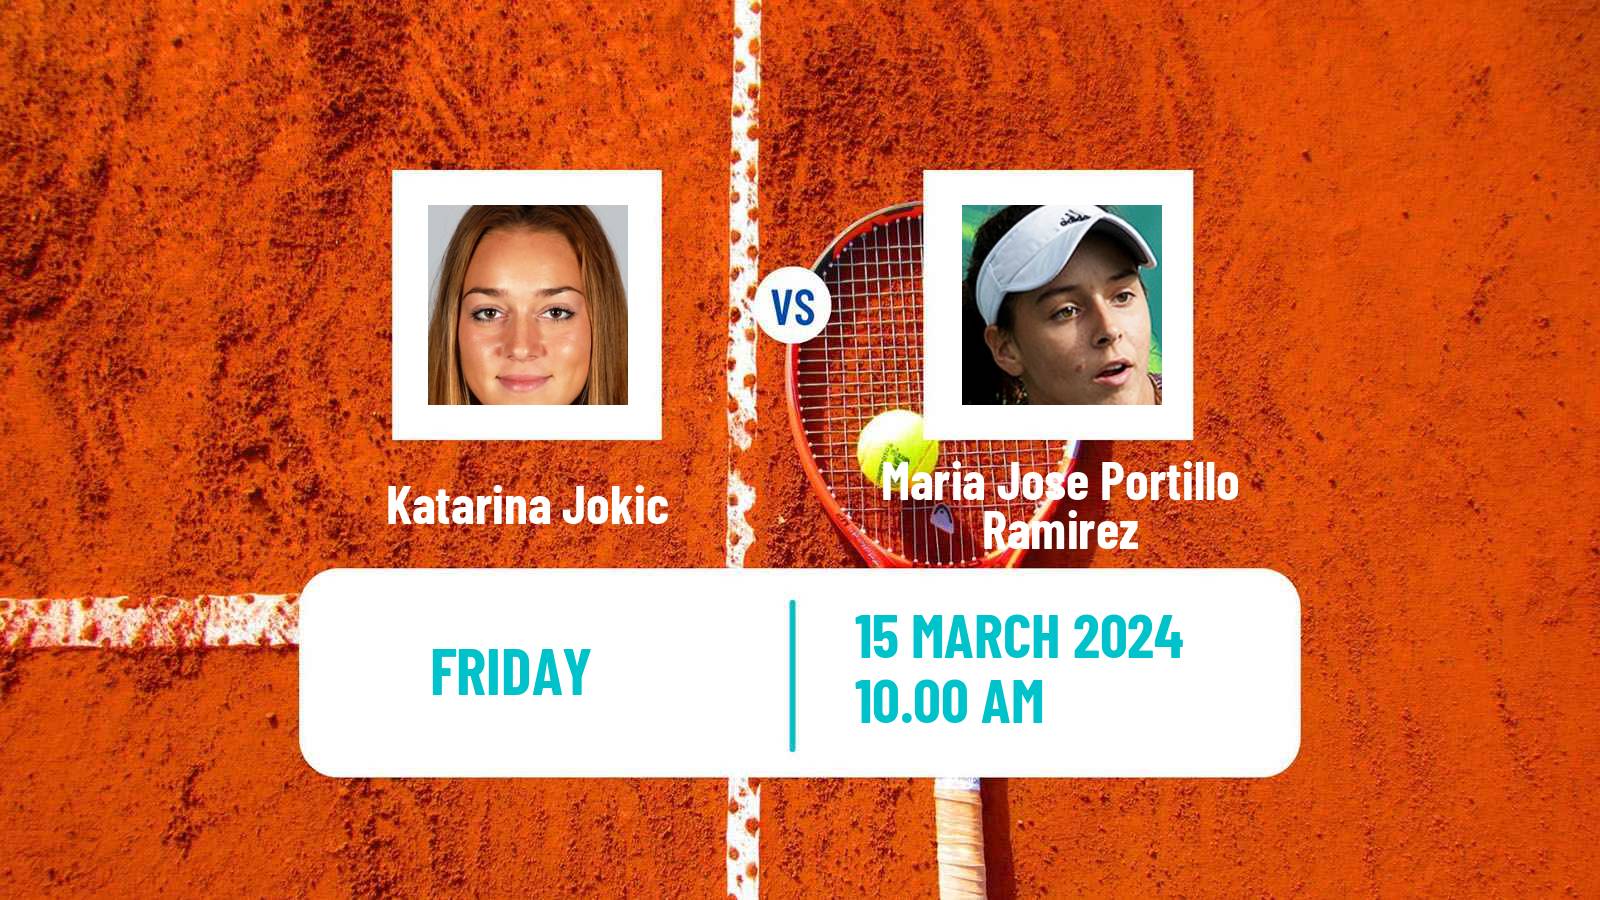 Tennis ITF W35 Santo Domingo 2 Women Katarina Jokic - Maria Jose Portillo Ramirez